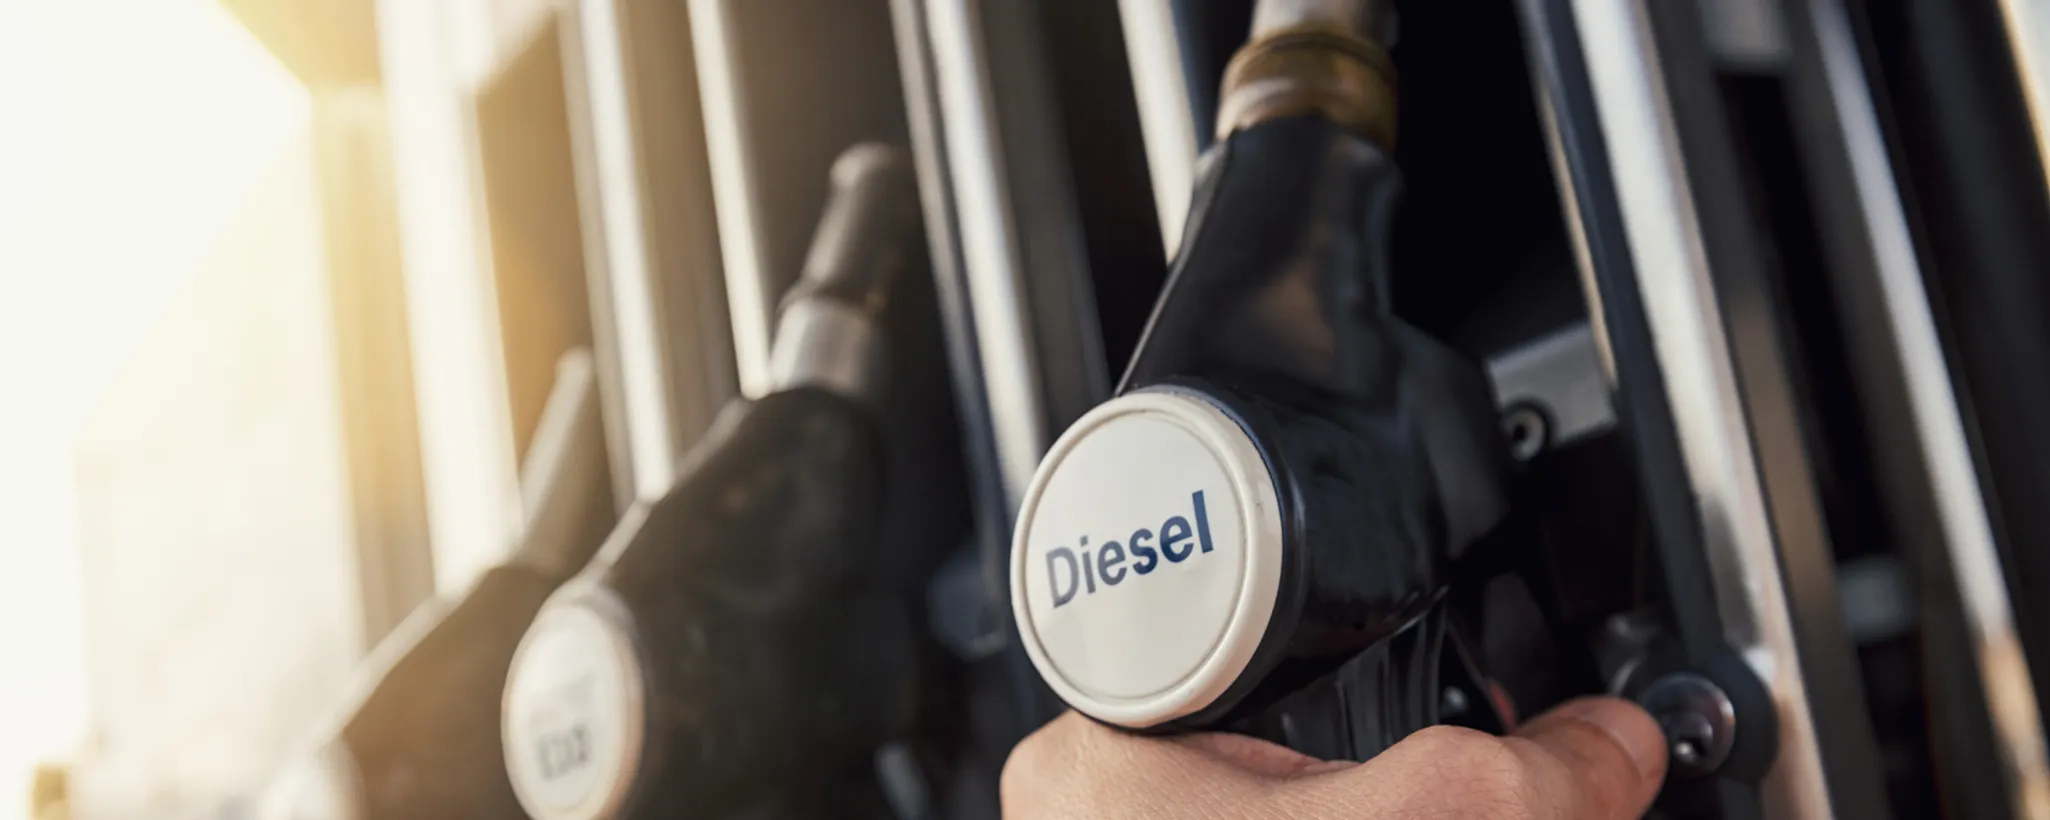 Benzin oder Diesel: Ein Vergleich zeigt, was besser ist